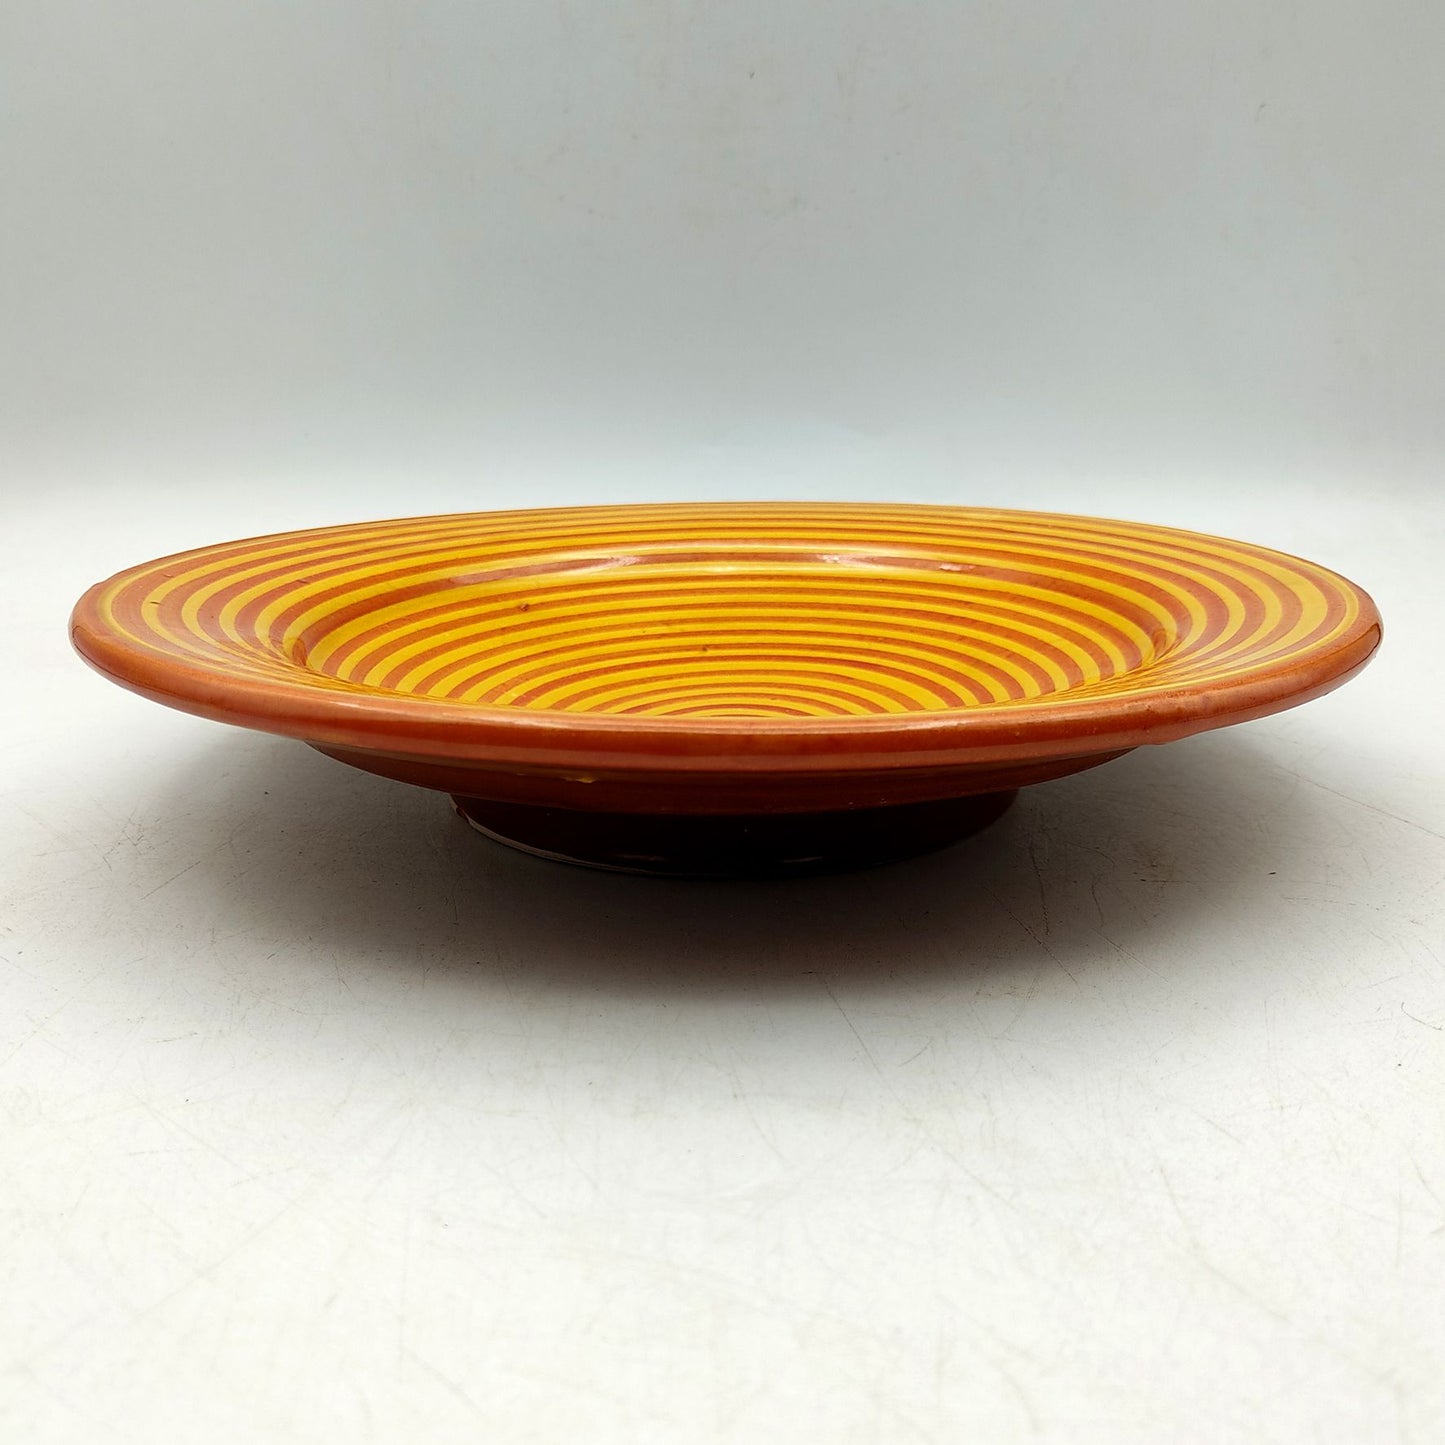 Piatto Ceramica Terracotta Parete Diam.23cm Etnico Marocchino Marocco 0401221123